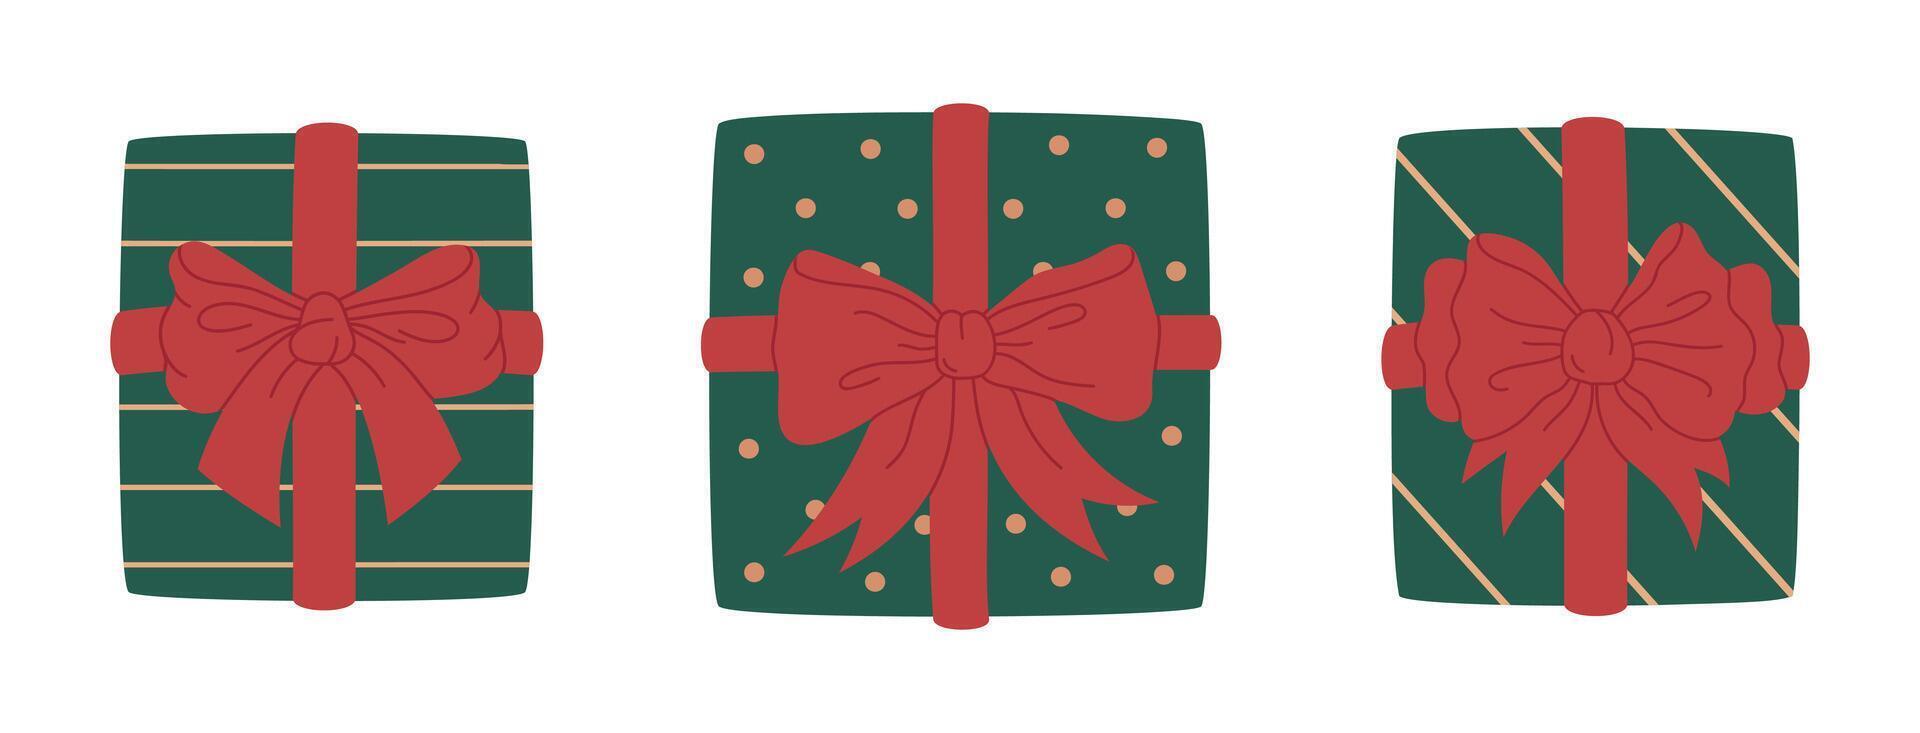 Navidad o cumpleaños regalos cajas mano dibujado Días festivos regalo cajas con seda arcos, envuelto regalo cajas plano ilustración colocar. linda presente caja colección vector